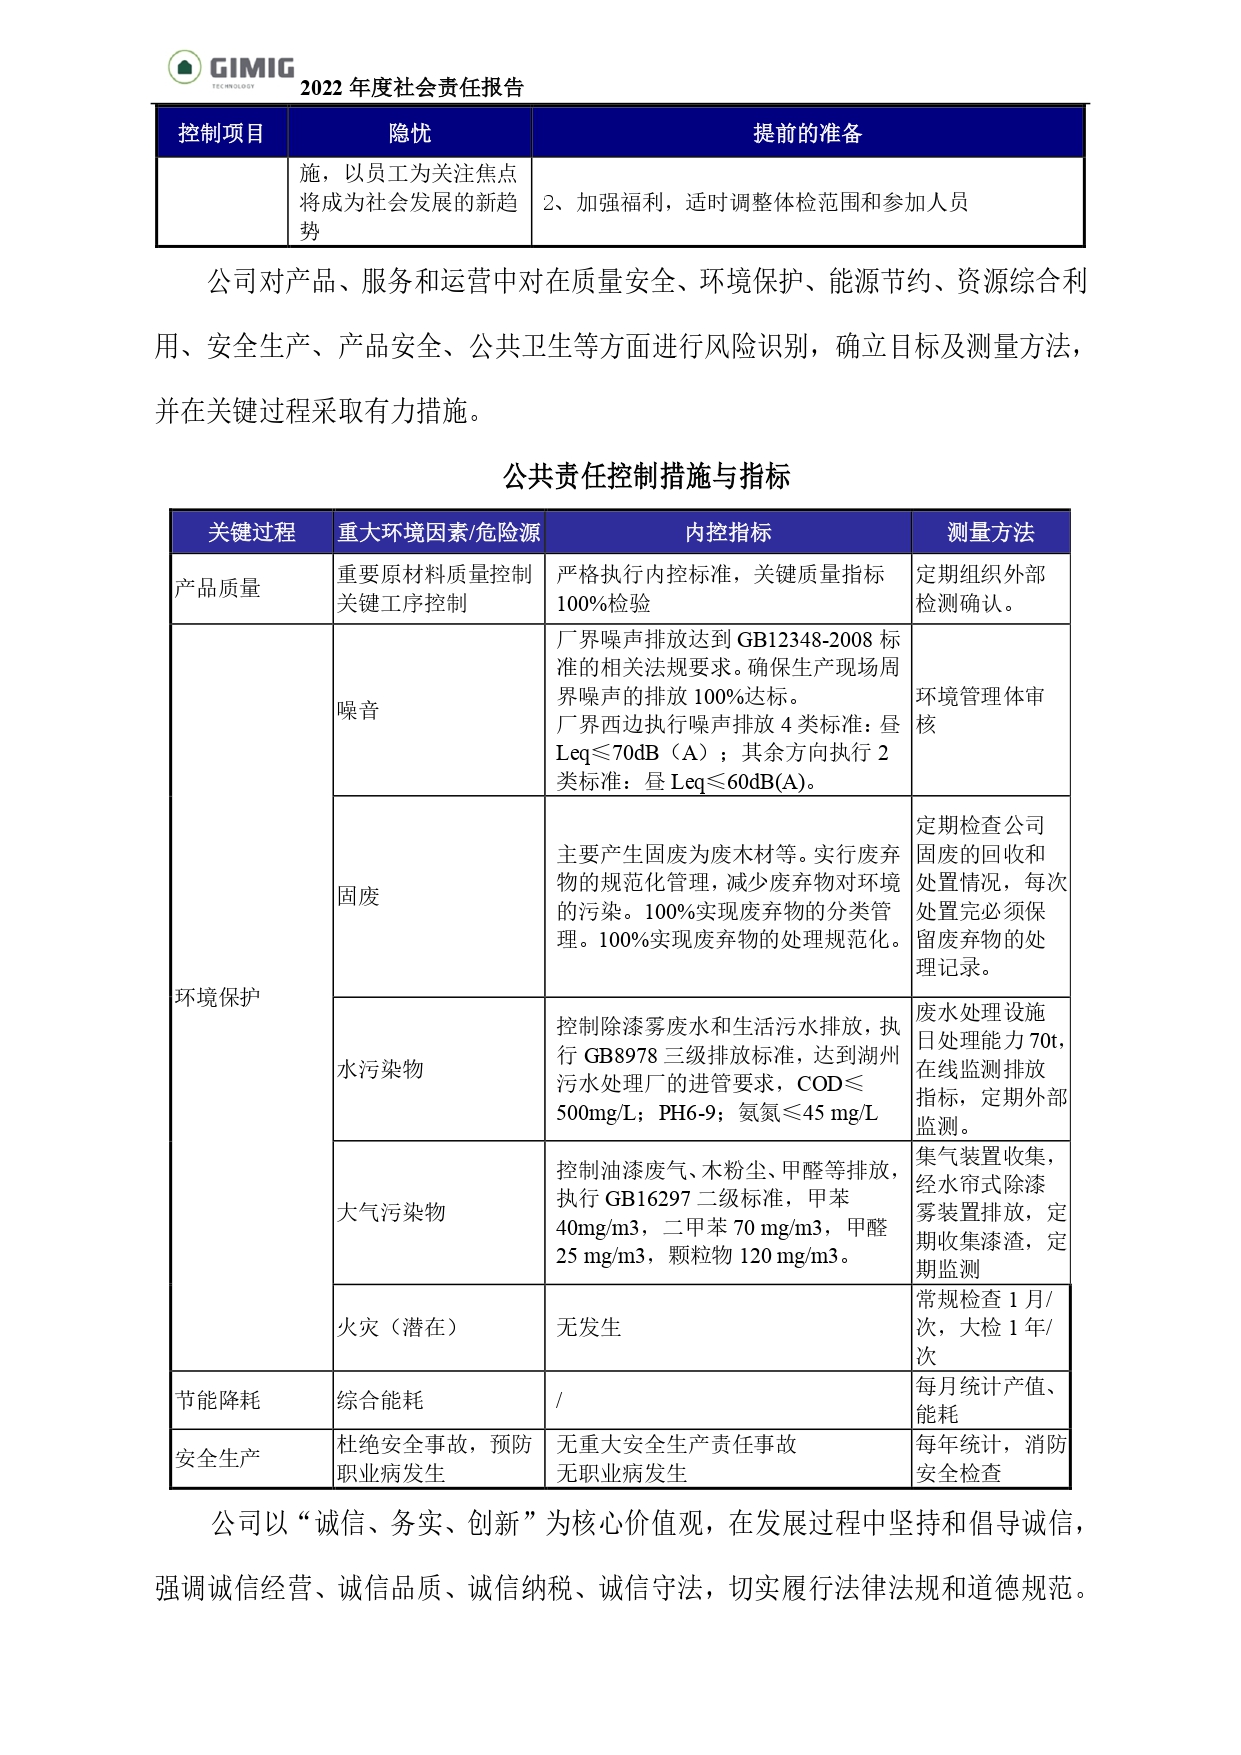 社会责任报告-BETVLCTOR伟德入口_page-0006.jpg